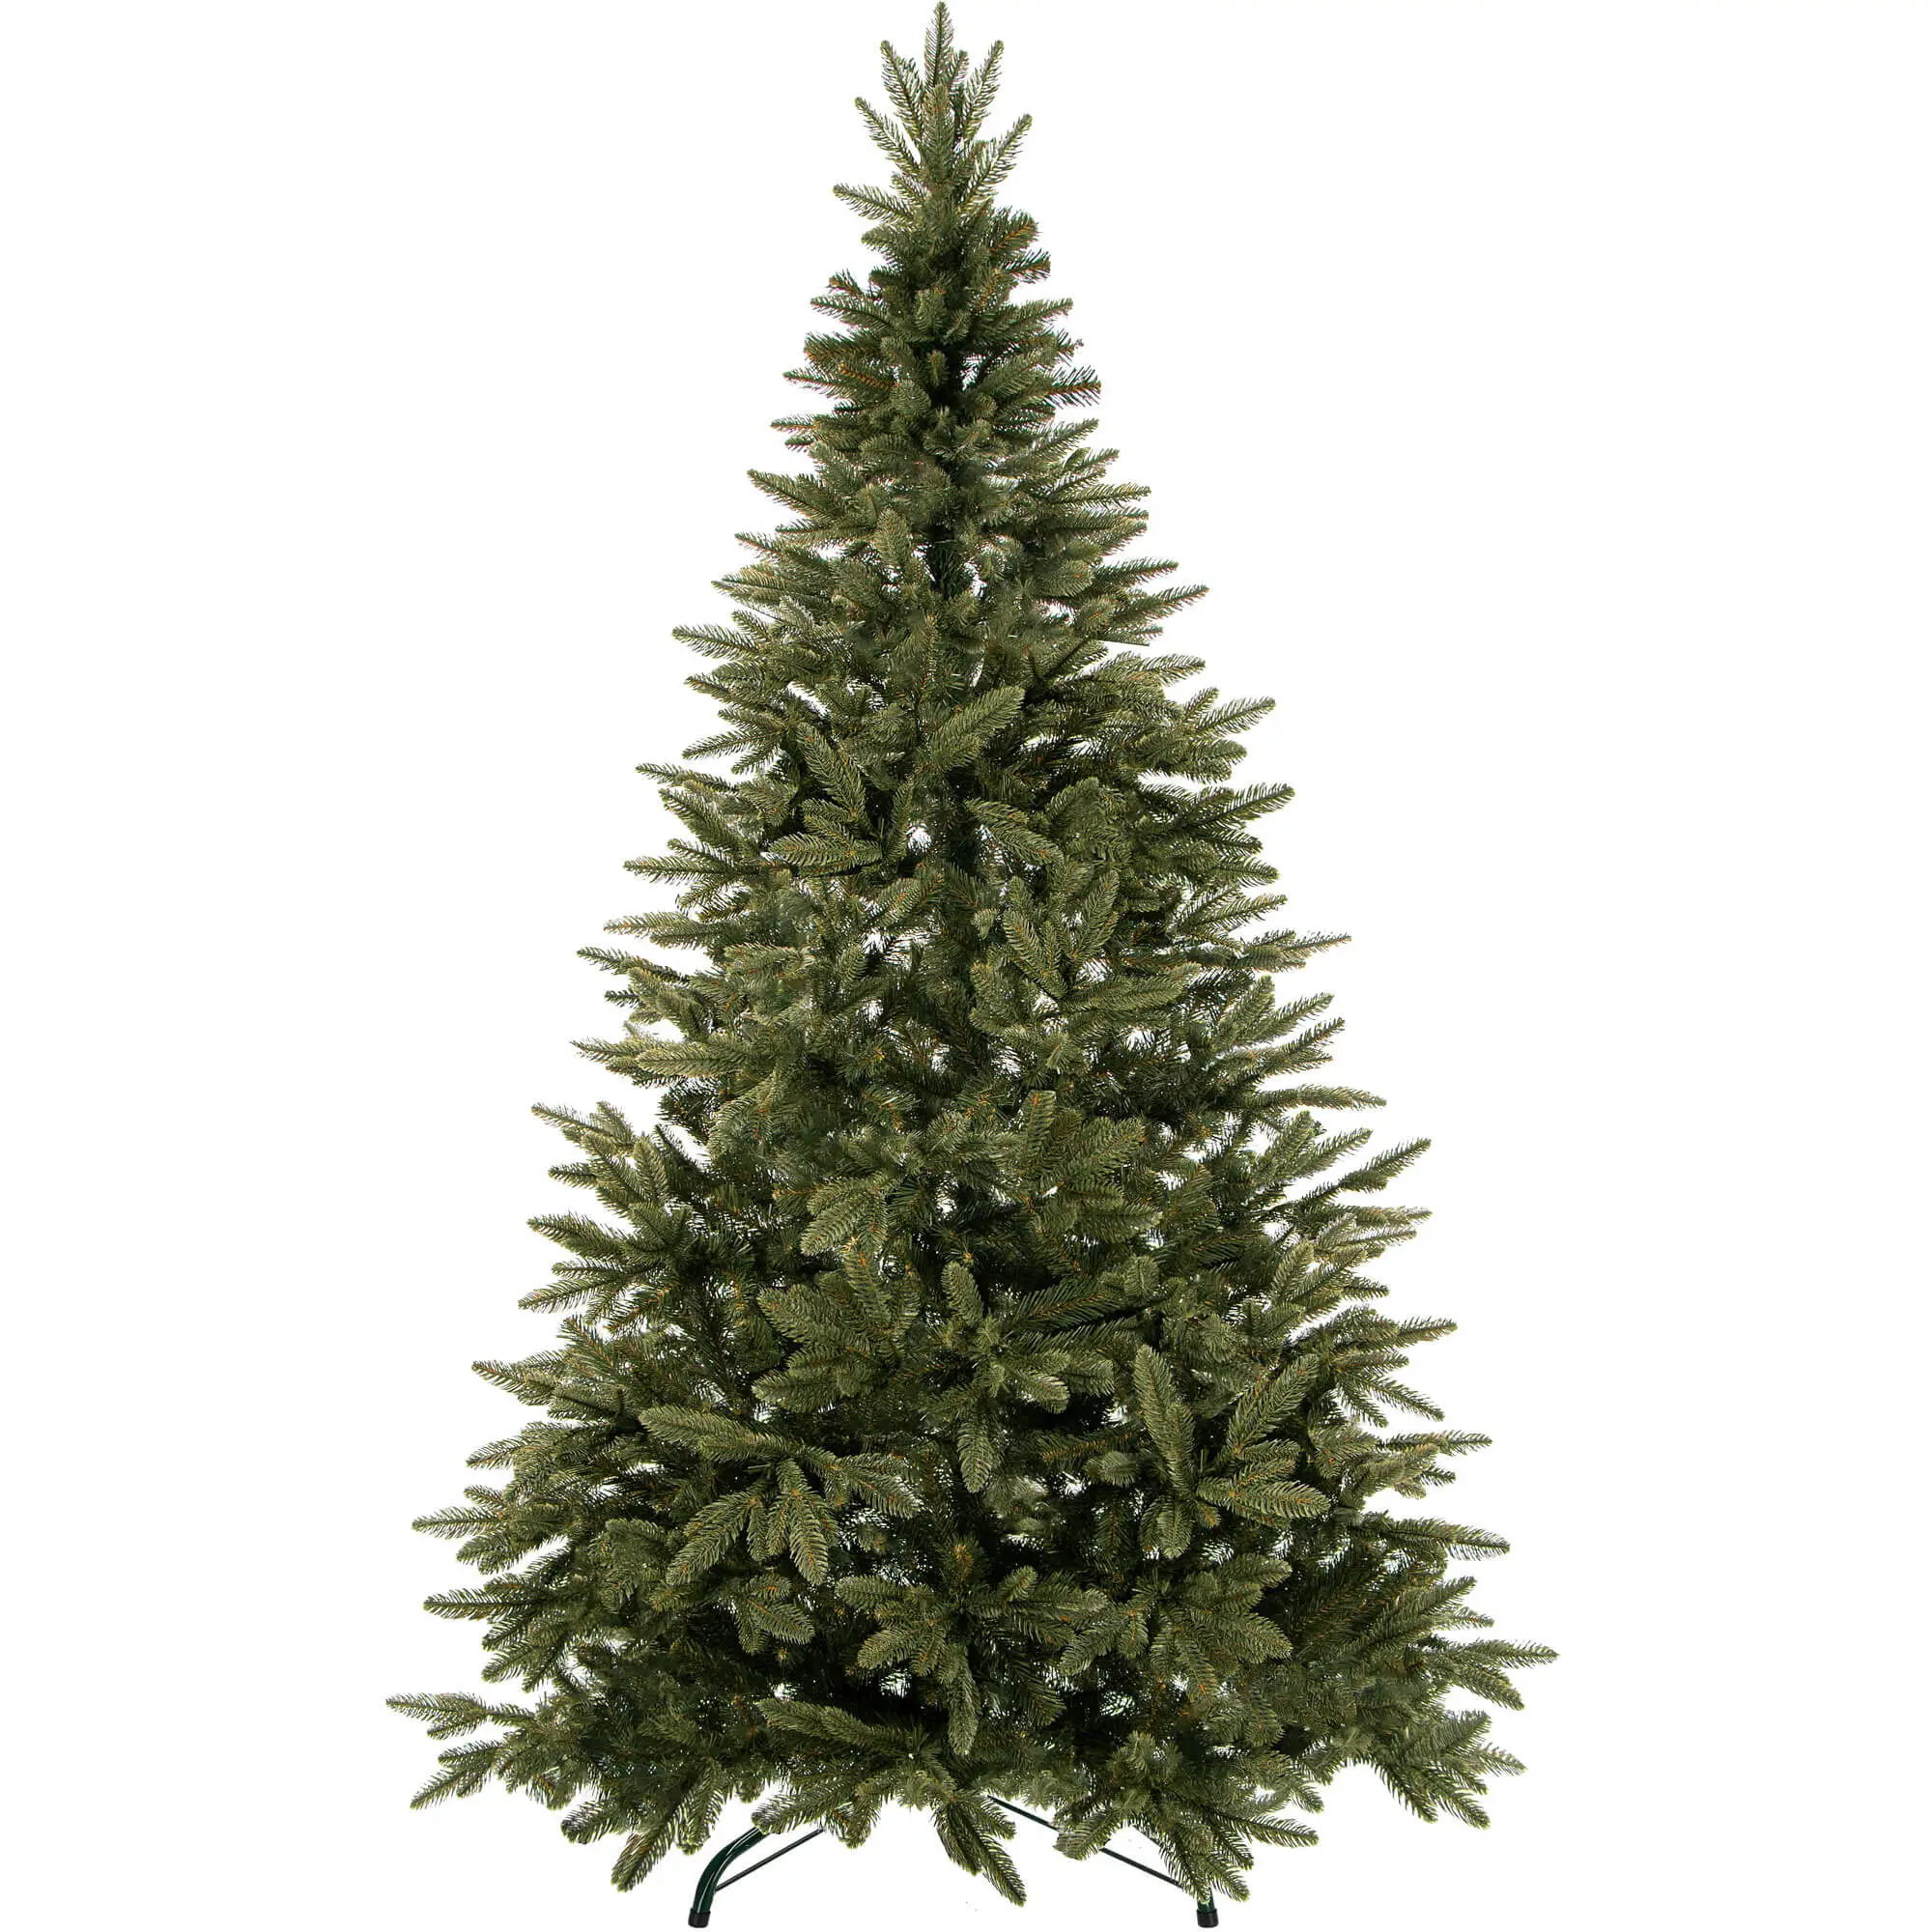 K眉nstlicher Christbaum Fichte Natur | Weihnachtsbäume